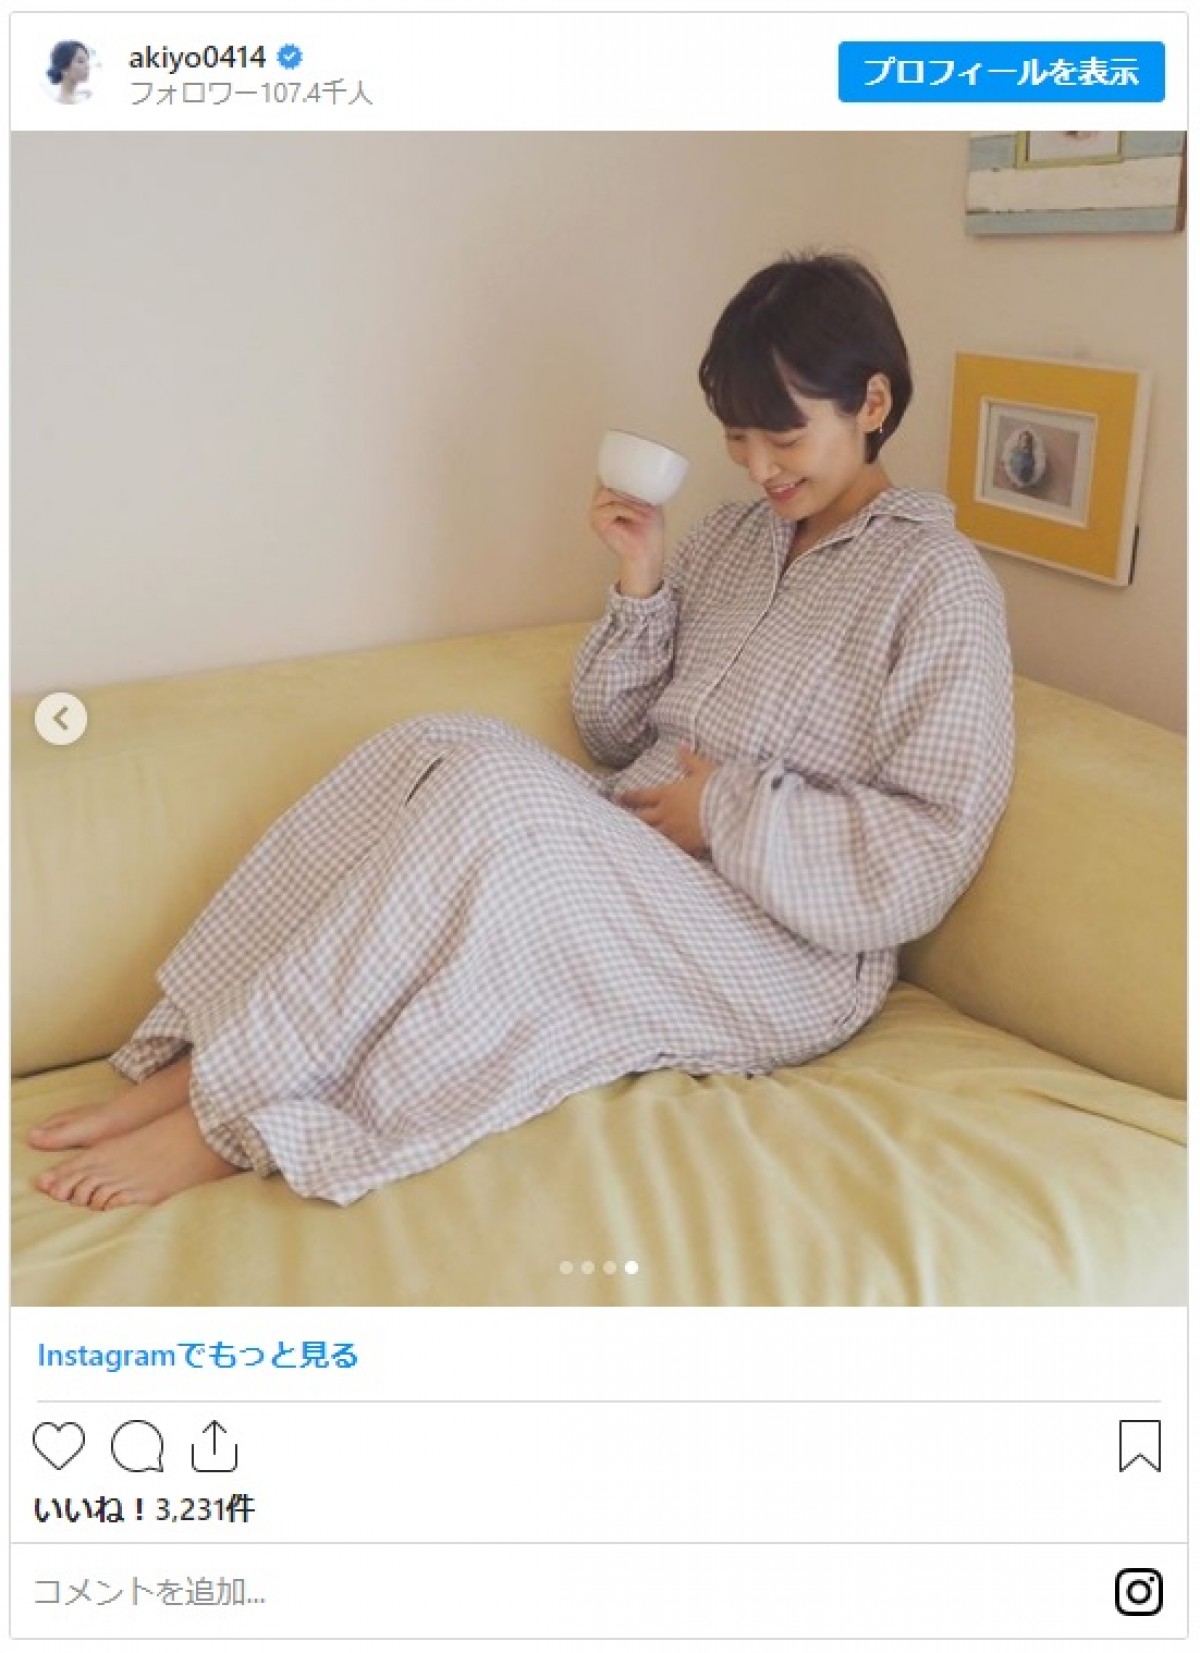 第2子妊娠の吉田明世アナ、ふっくらお腹のマタニティパジャマ姿に反響「素敵です」